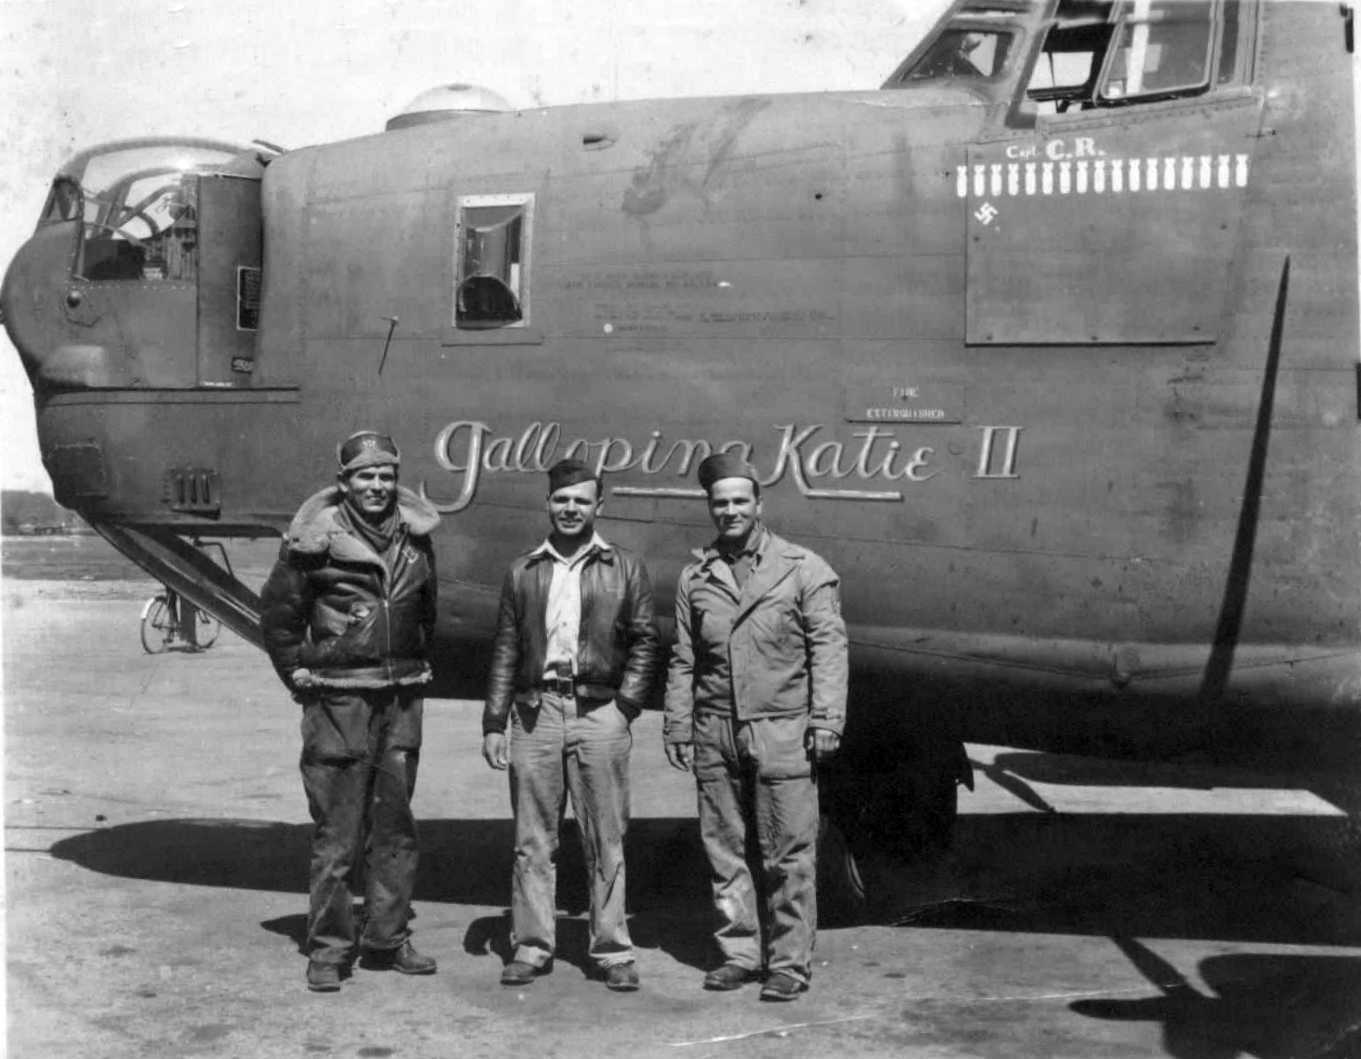 B-24 Liberator Galloping Katie II